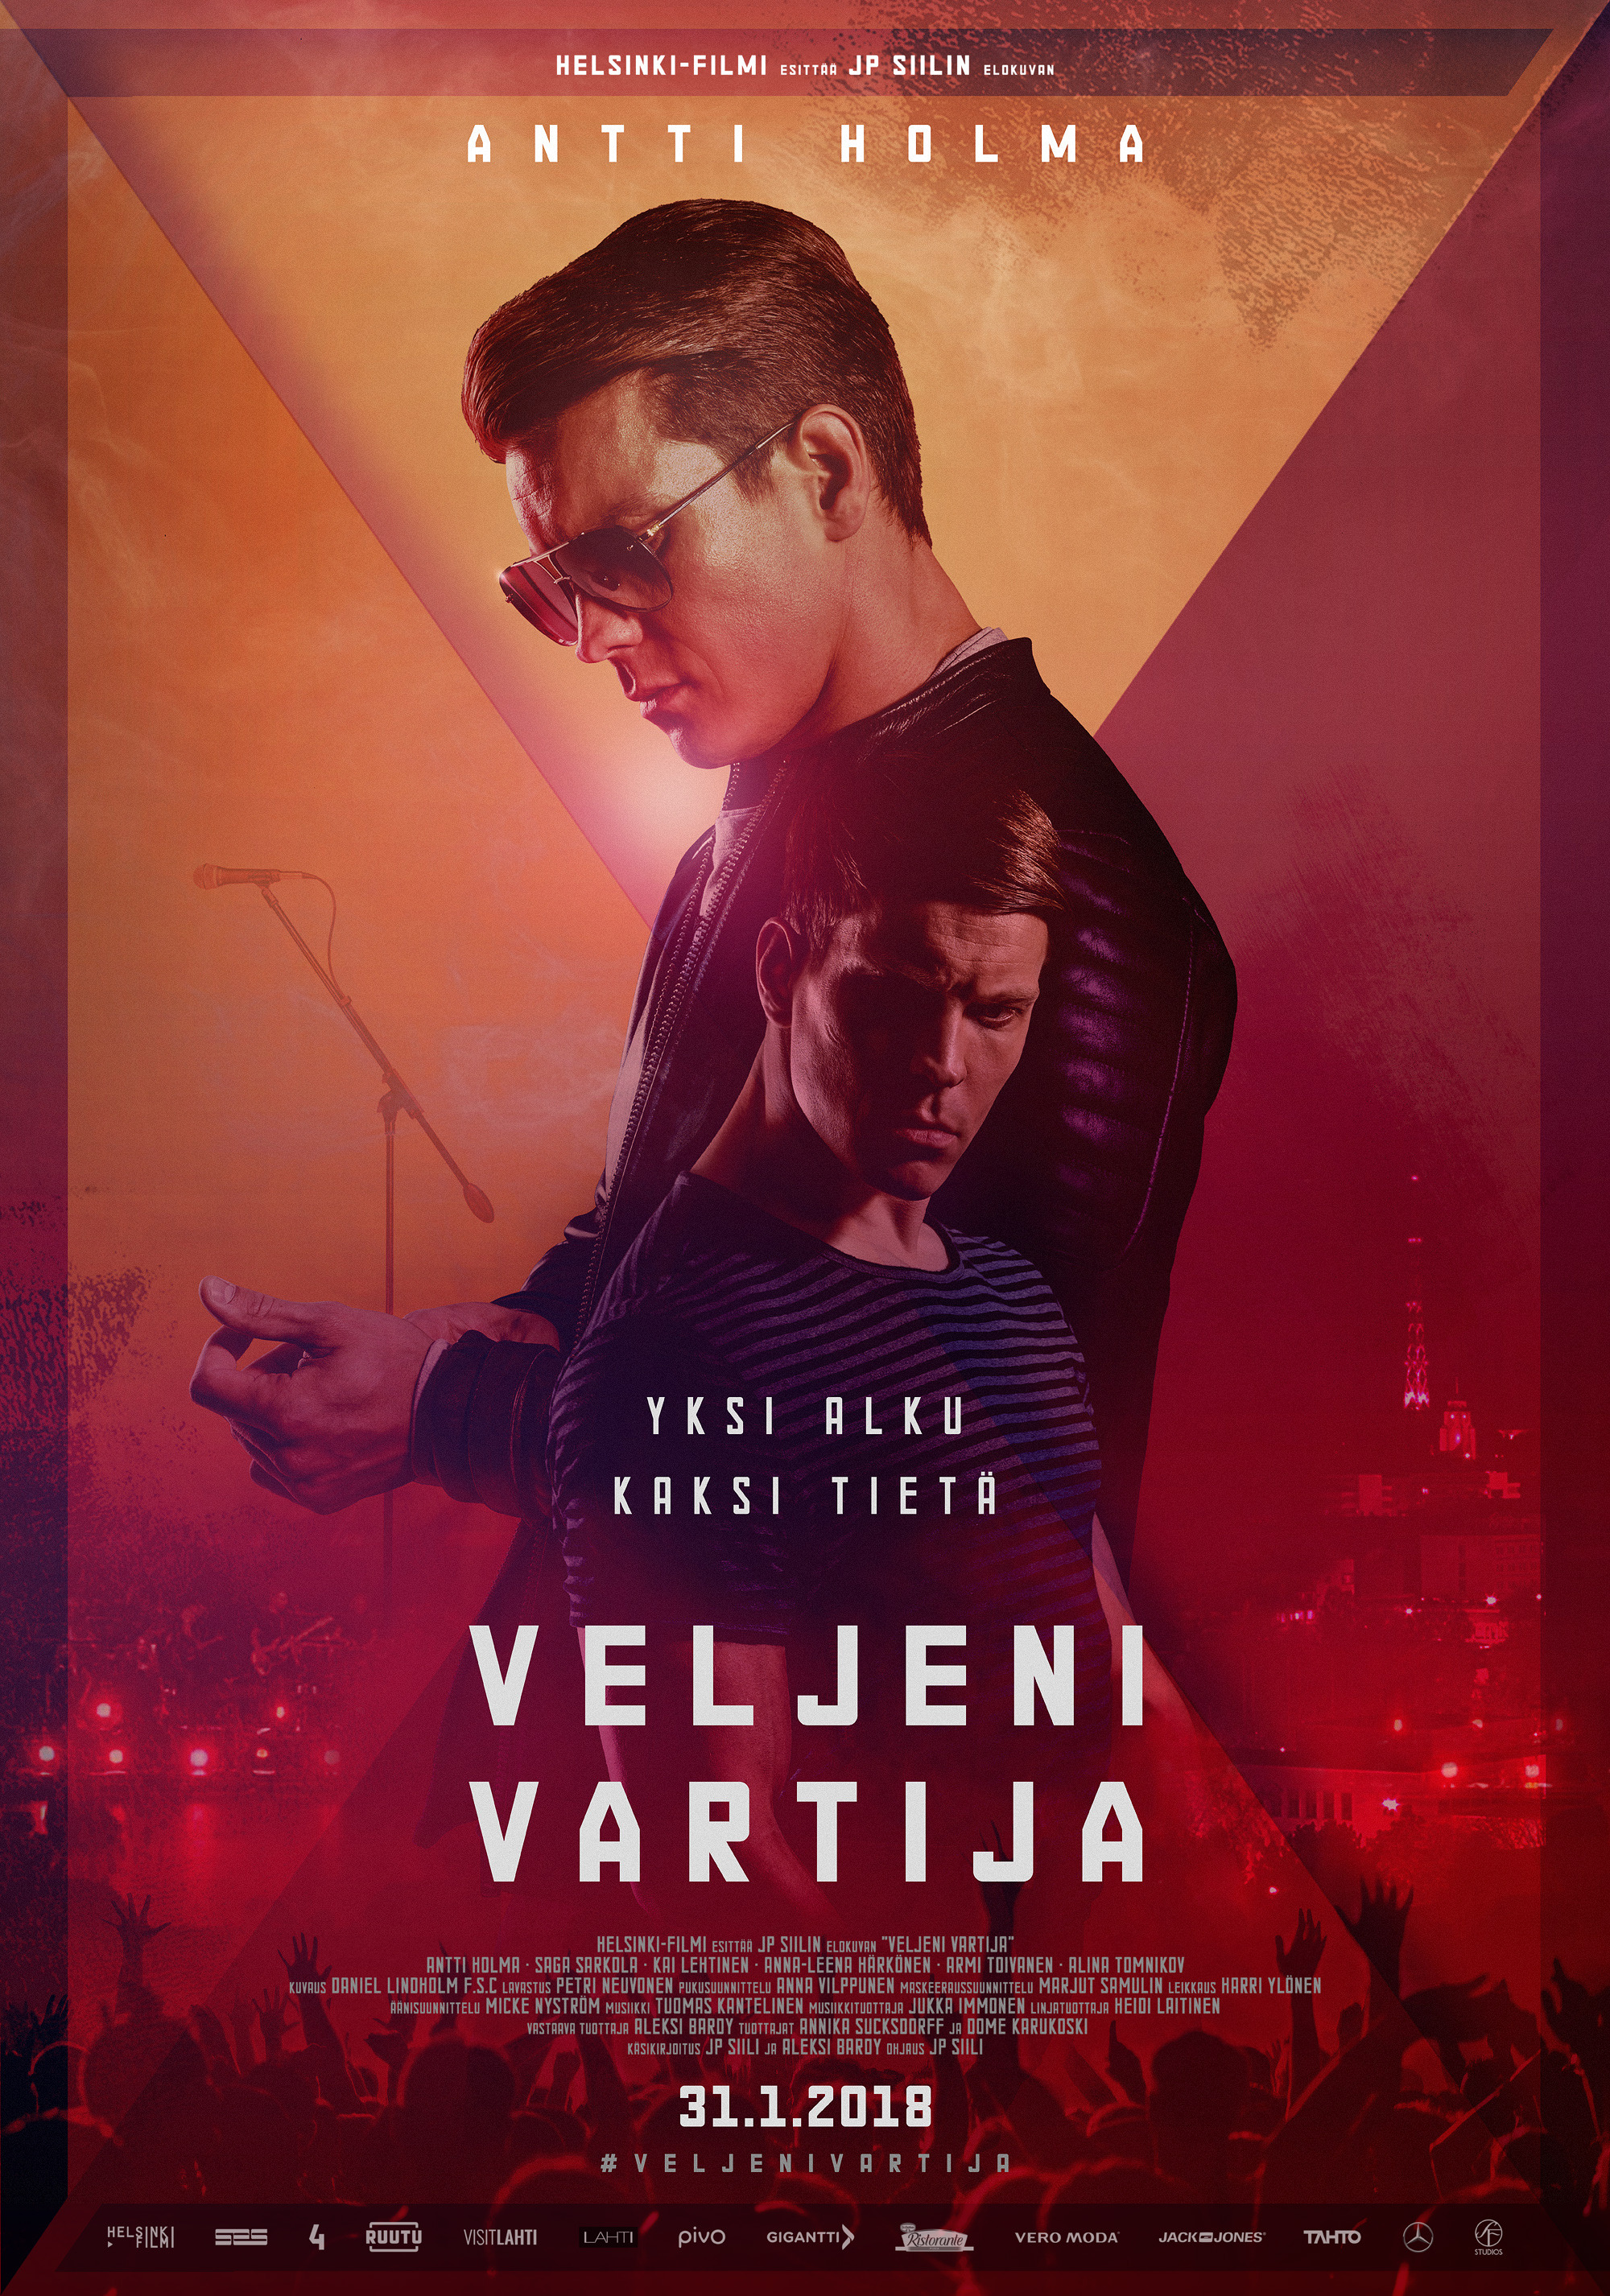 Mega Sized Movie Poster Image for Veljeni vartija 